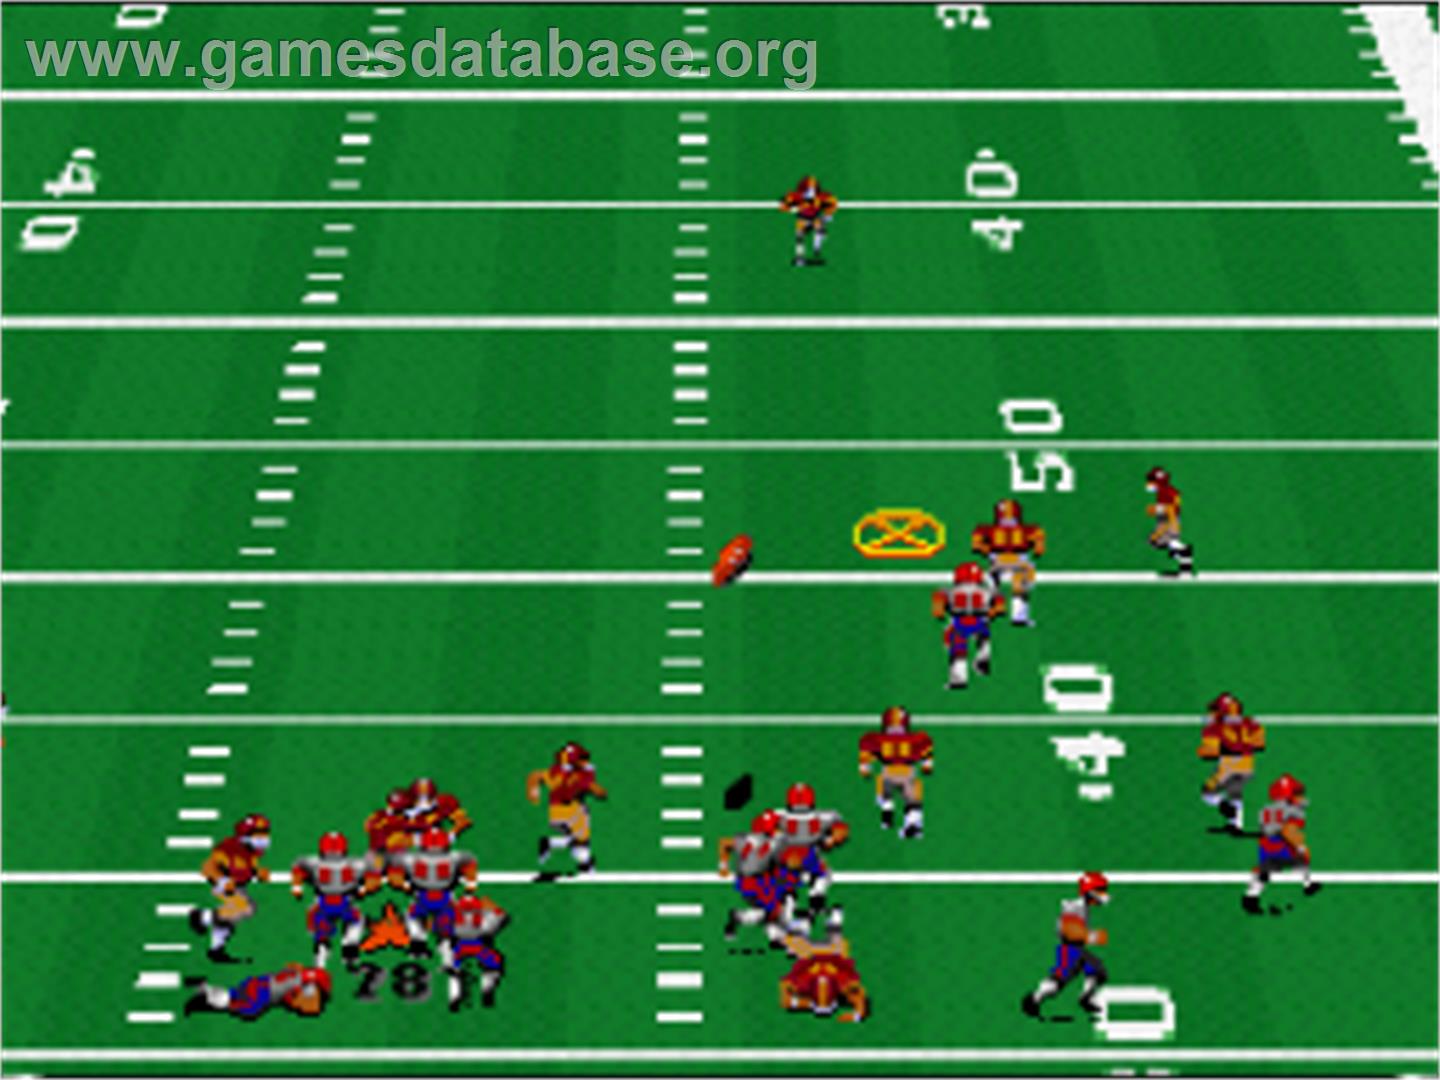 John Madden Football '93 - Nintendo SNES - Artwork - In Game